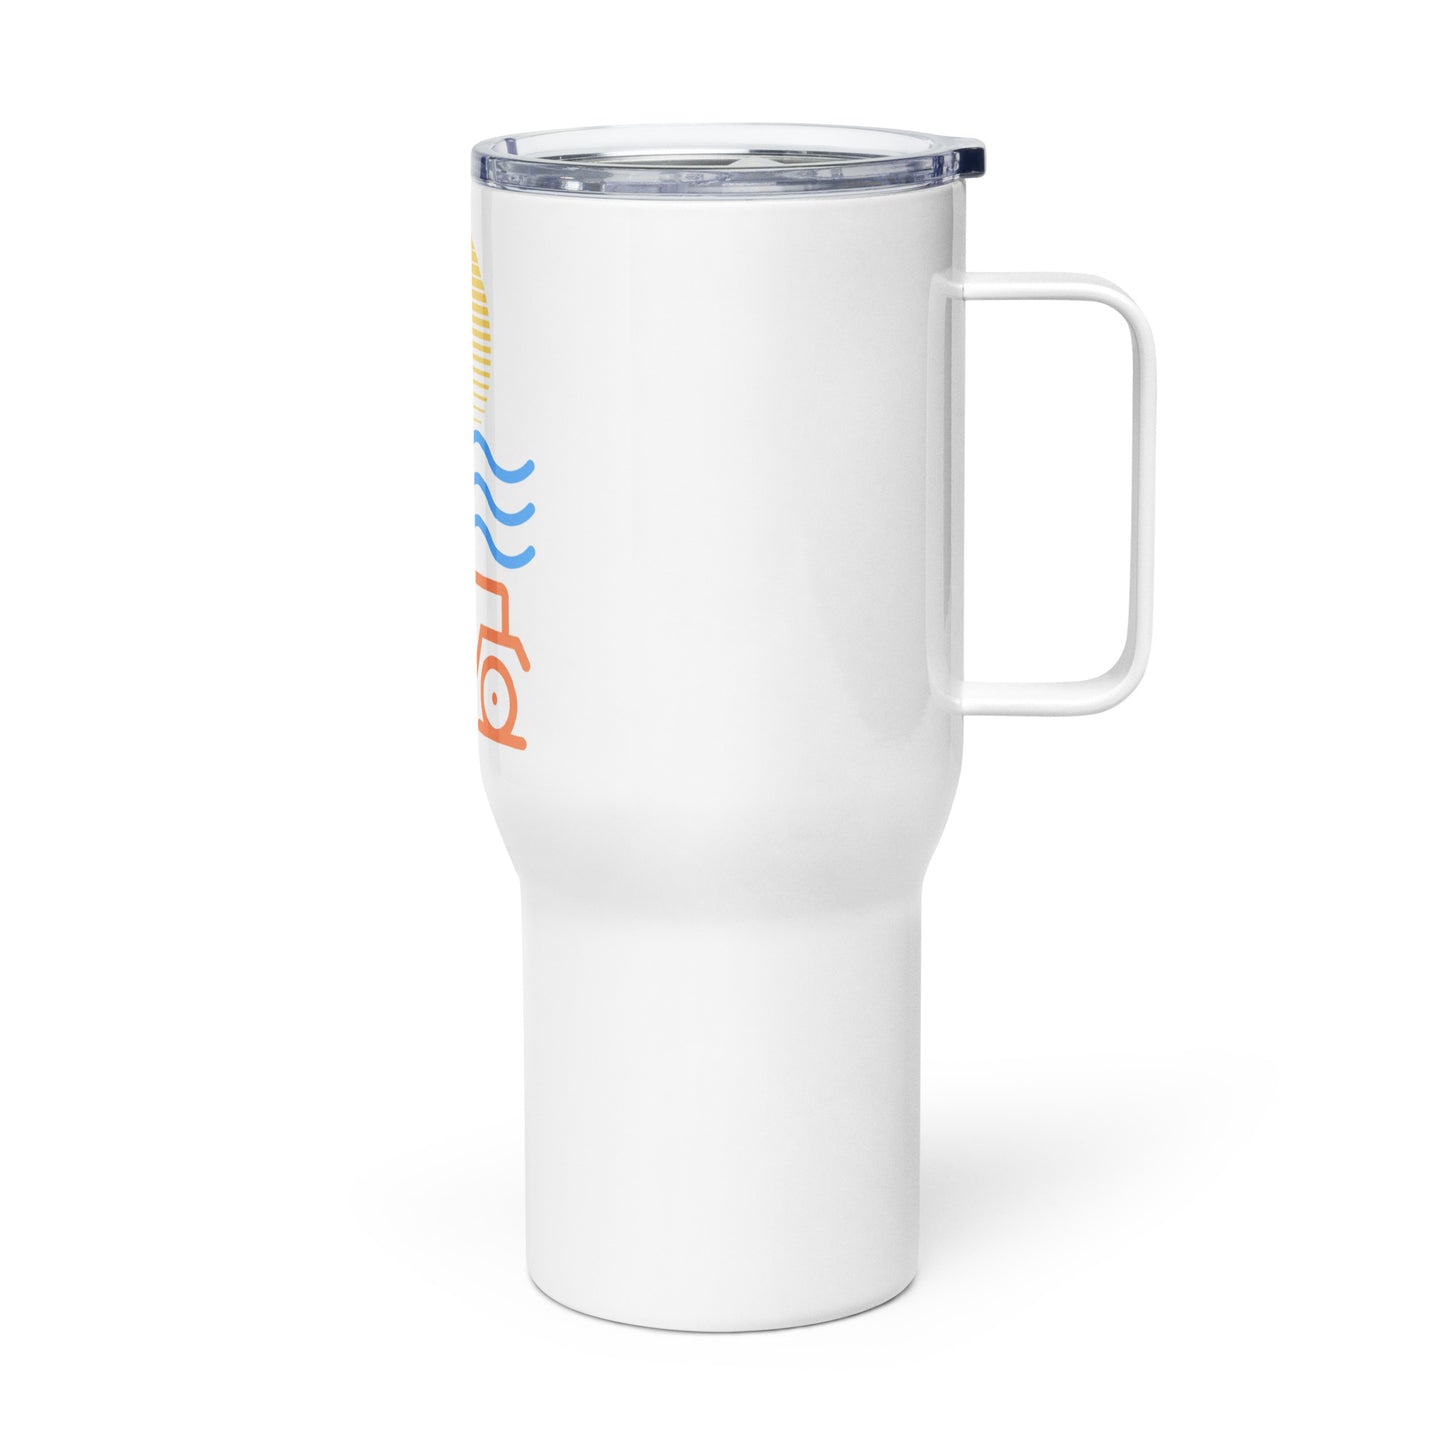 Travel mug with a handle Sun Beach 4x4